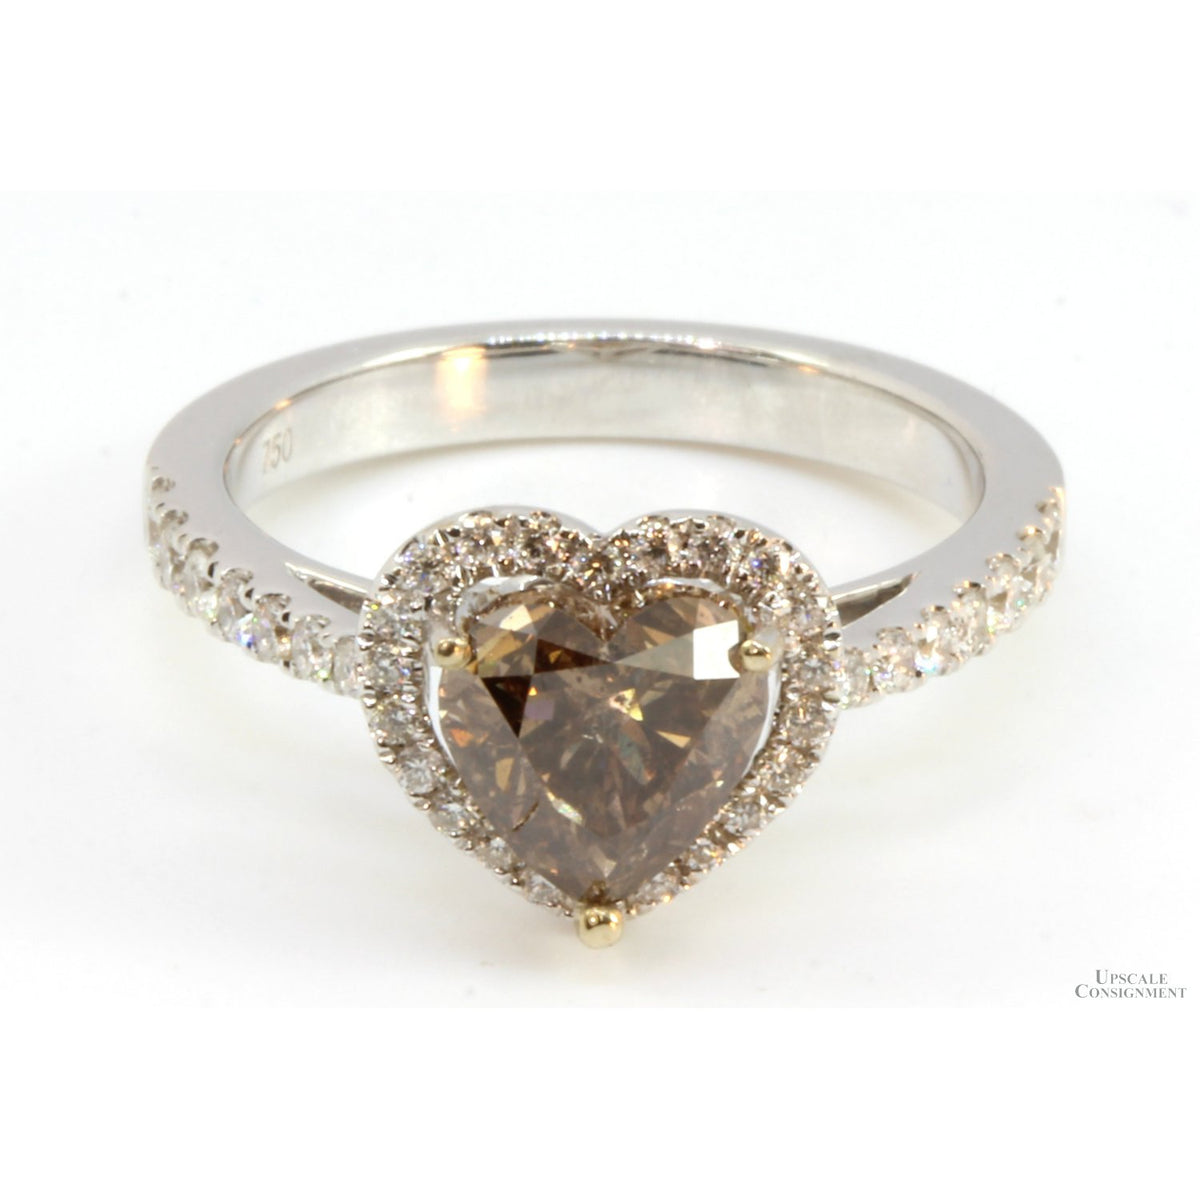 18K Gold 2.12ctw Diamond Ring w/1.72ct Fancy Brown Heart Shape Diamond